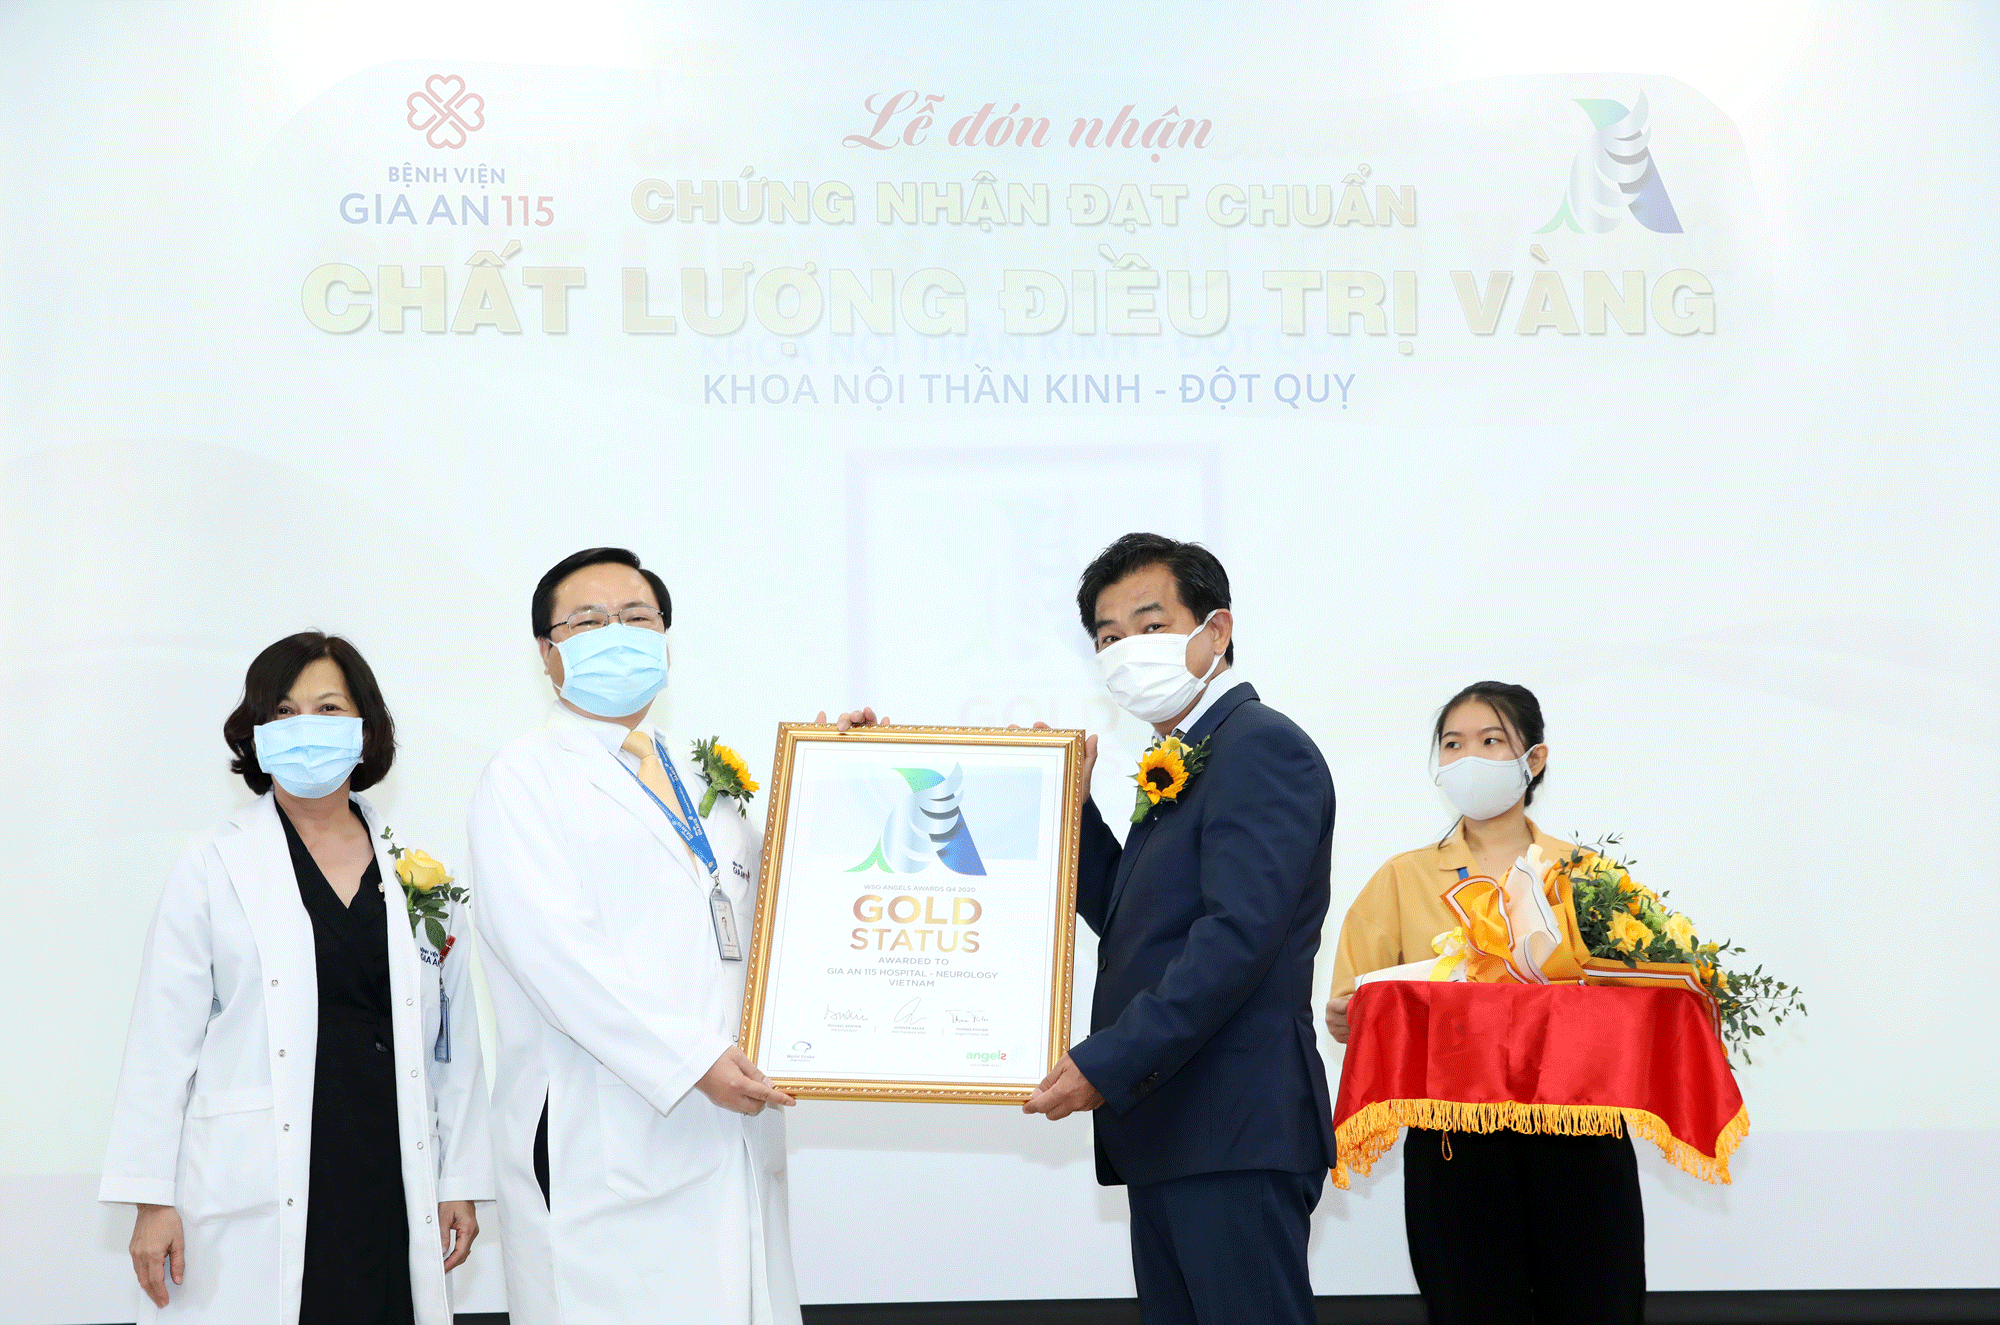 PGS-TS Nguyễn Huy Thắng, Phó Chủ tịch Hội Đột quỵ Việt Nam trao chứng nhận đạt chuẩn "chất lượng điều trị Vàng" cho Bệnh viên Gia An 115 